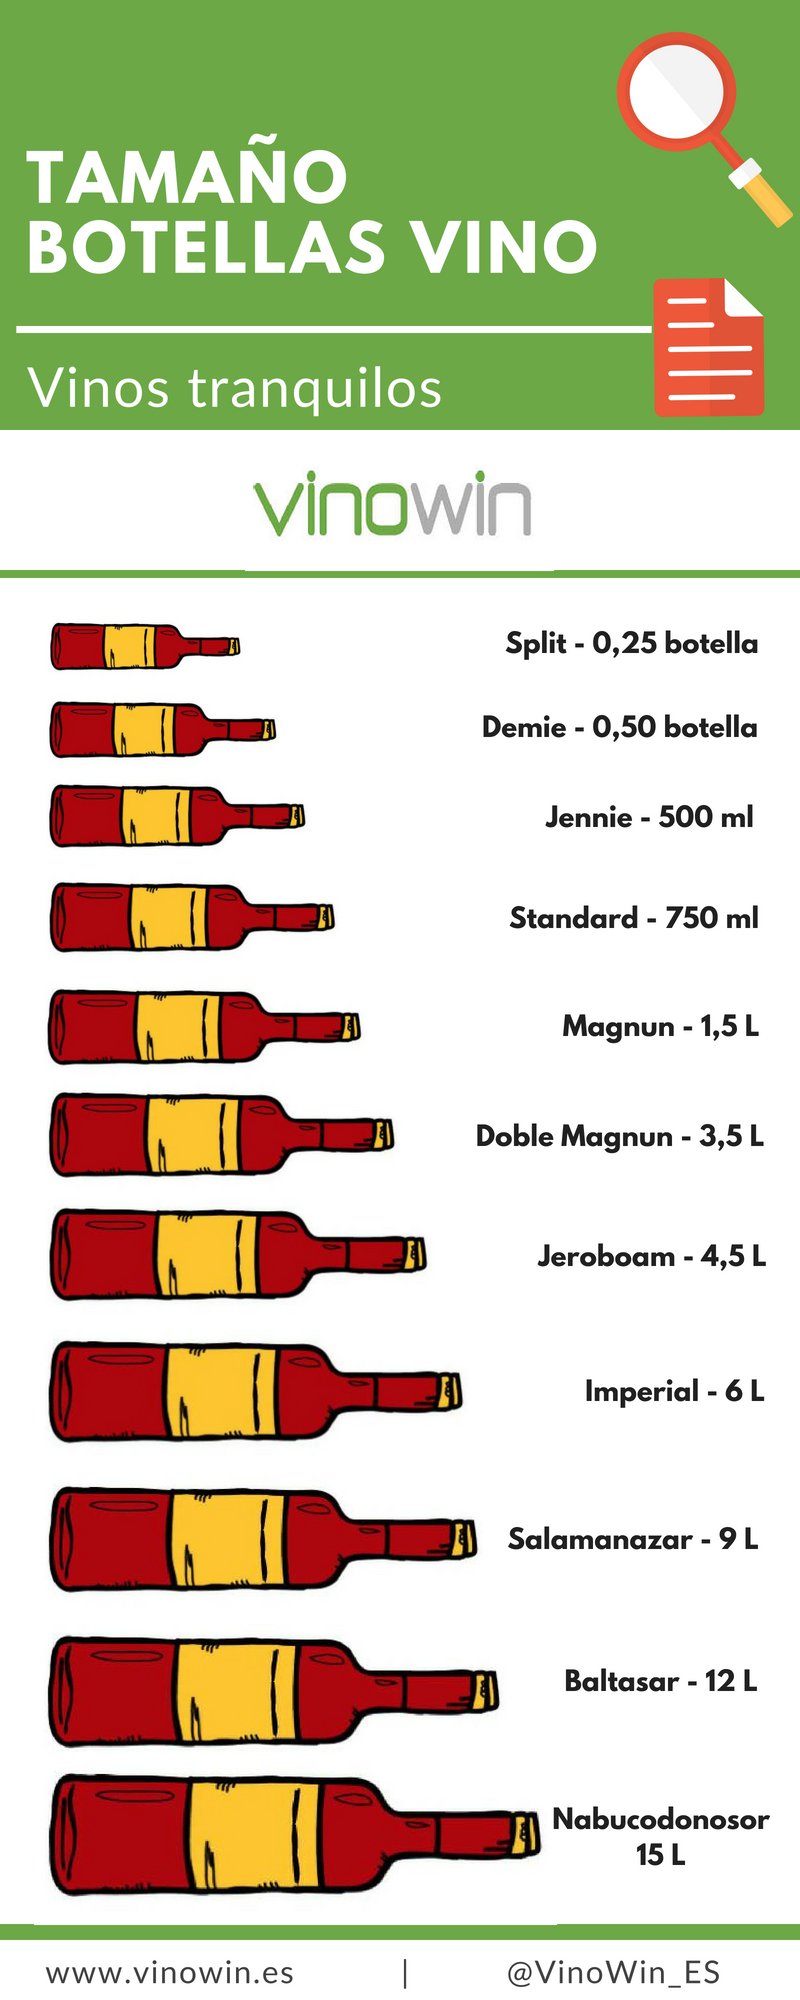 Tamaño botellas vino